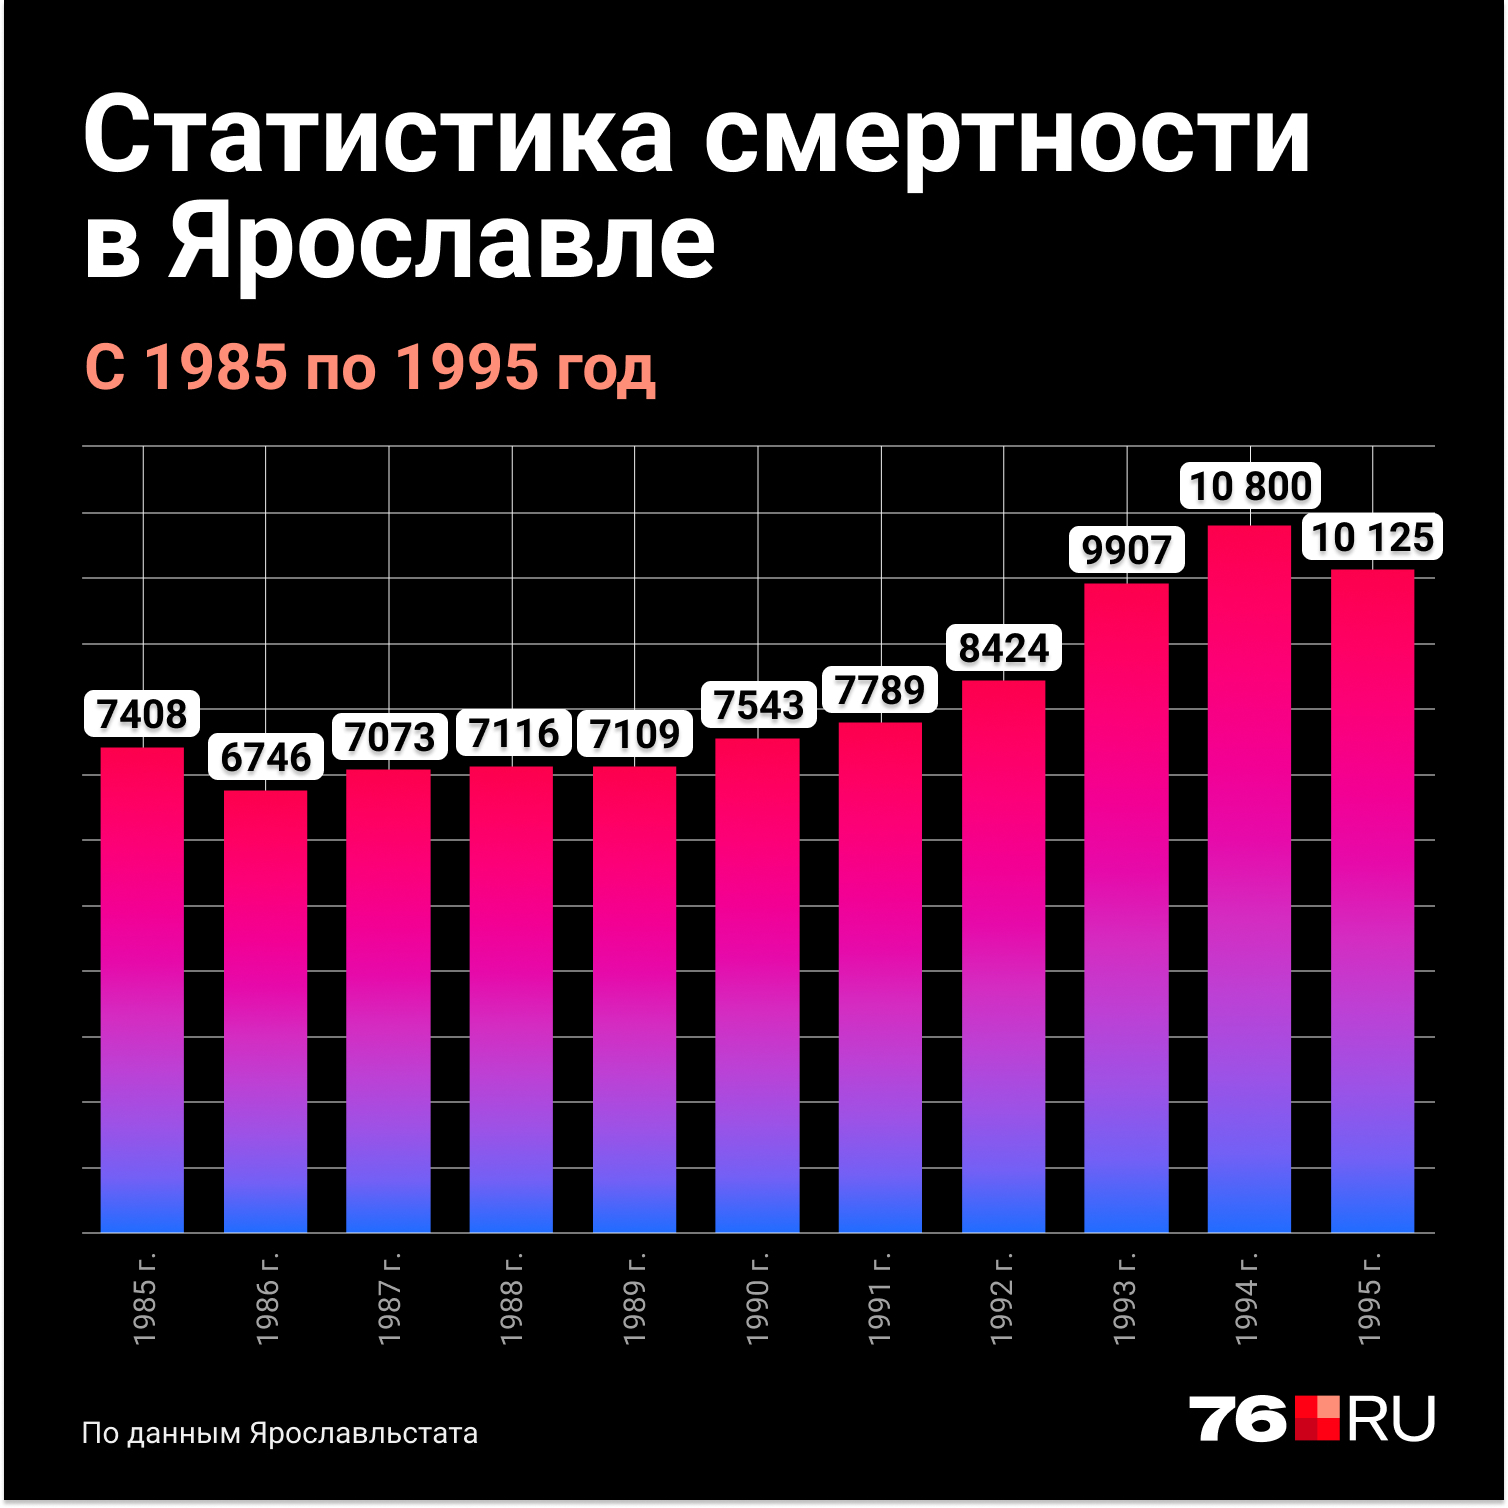 Статистика смертности в Ярославле с 1985-го по 1995 год. Видим, что вскоре после катастрофы количество умерших начало расти. Но утверждать, что между этими факторами есть причинно-следственная связь, мы, безусловно, не можем